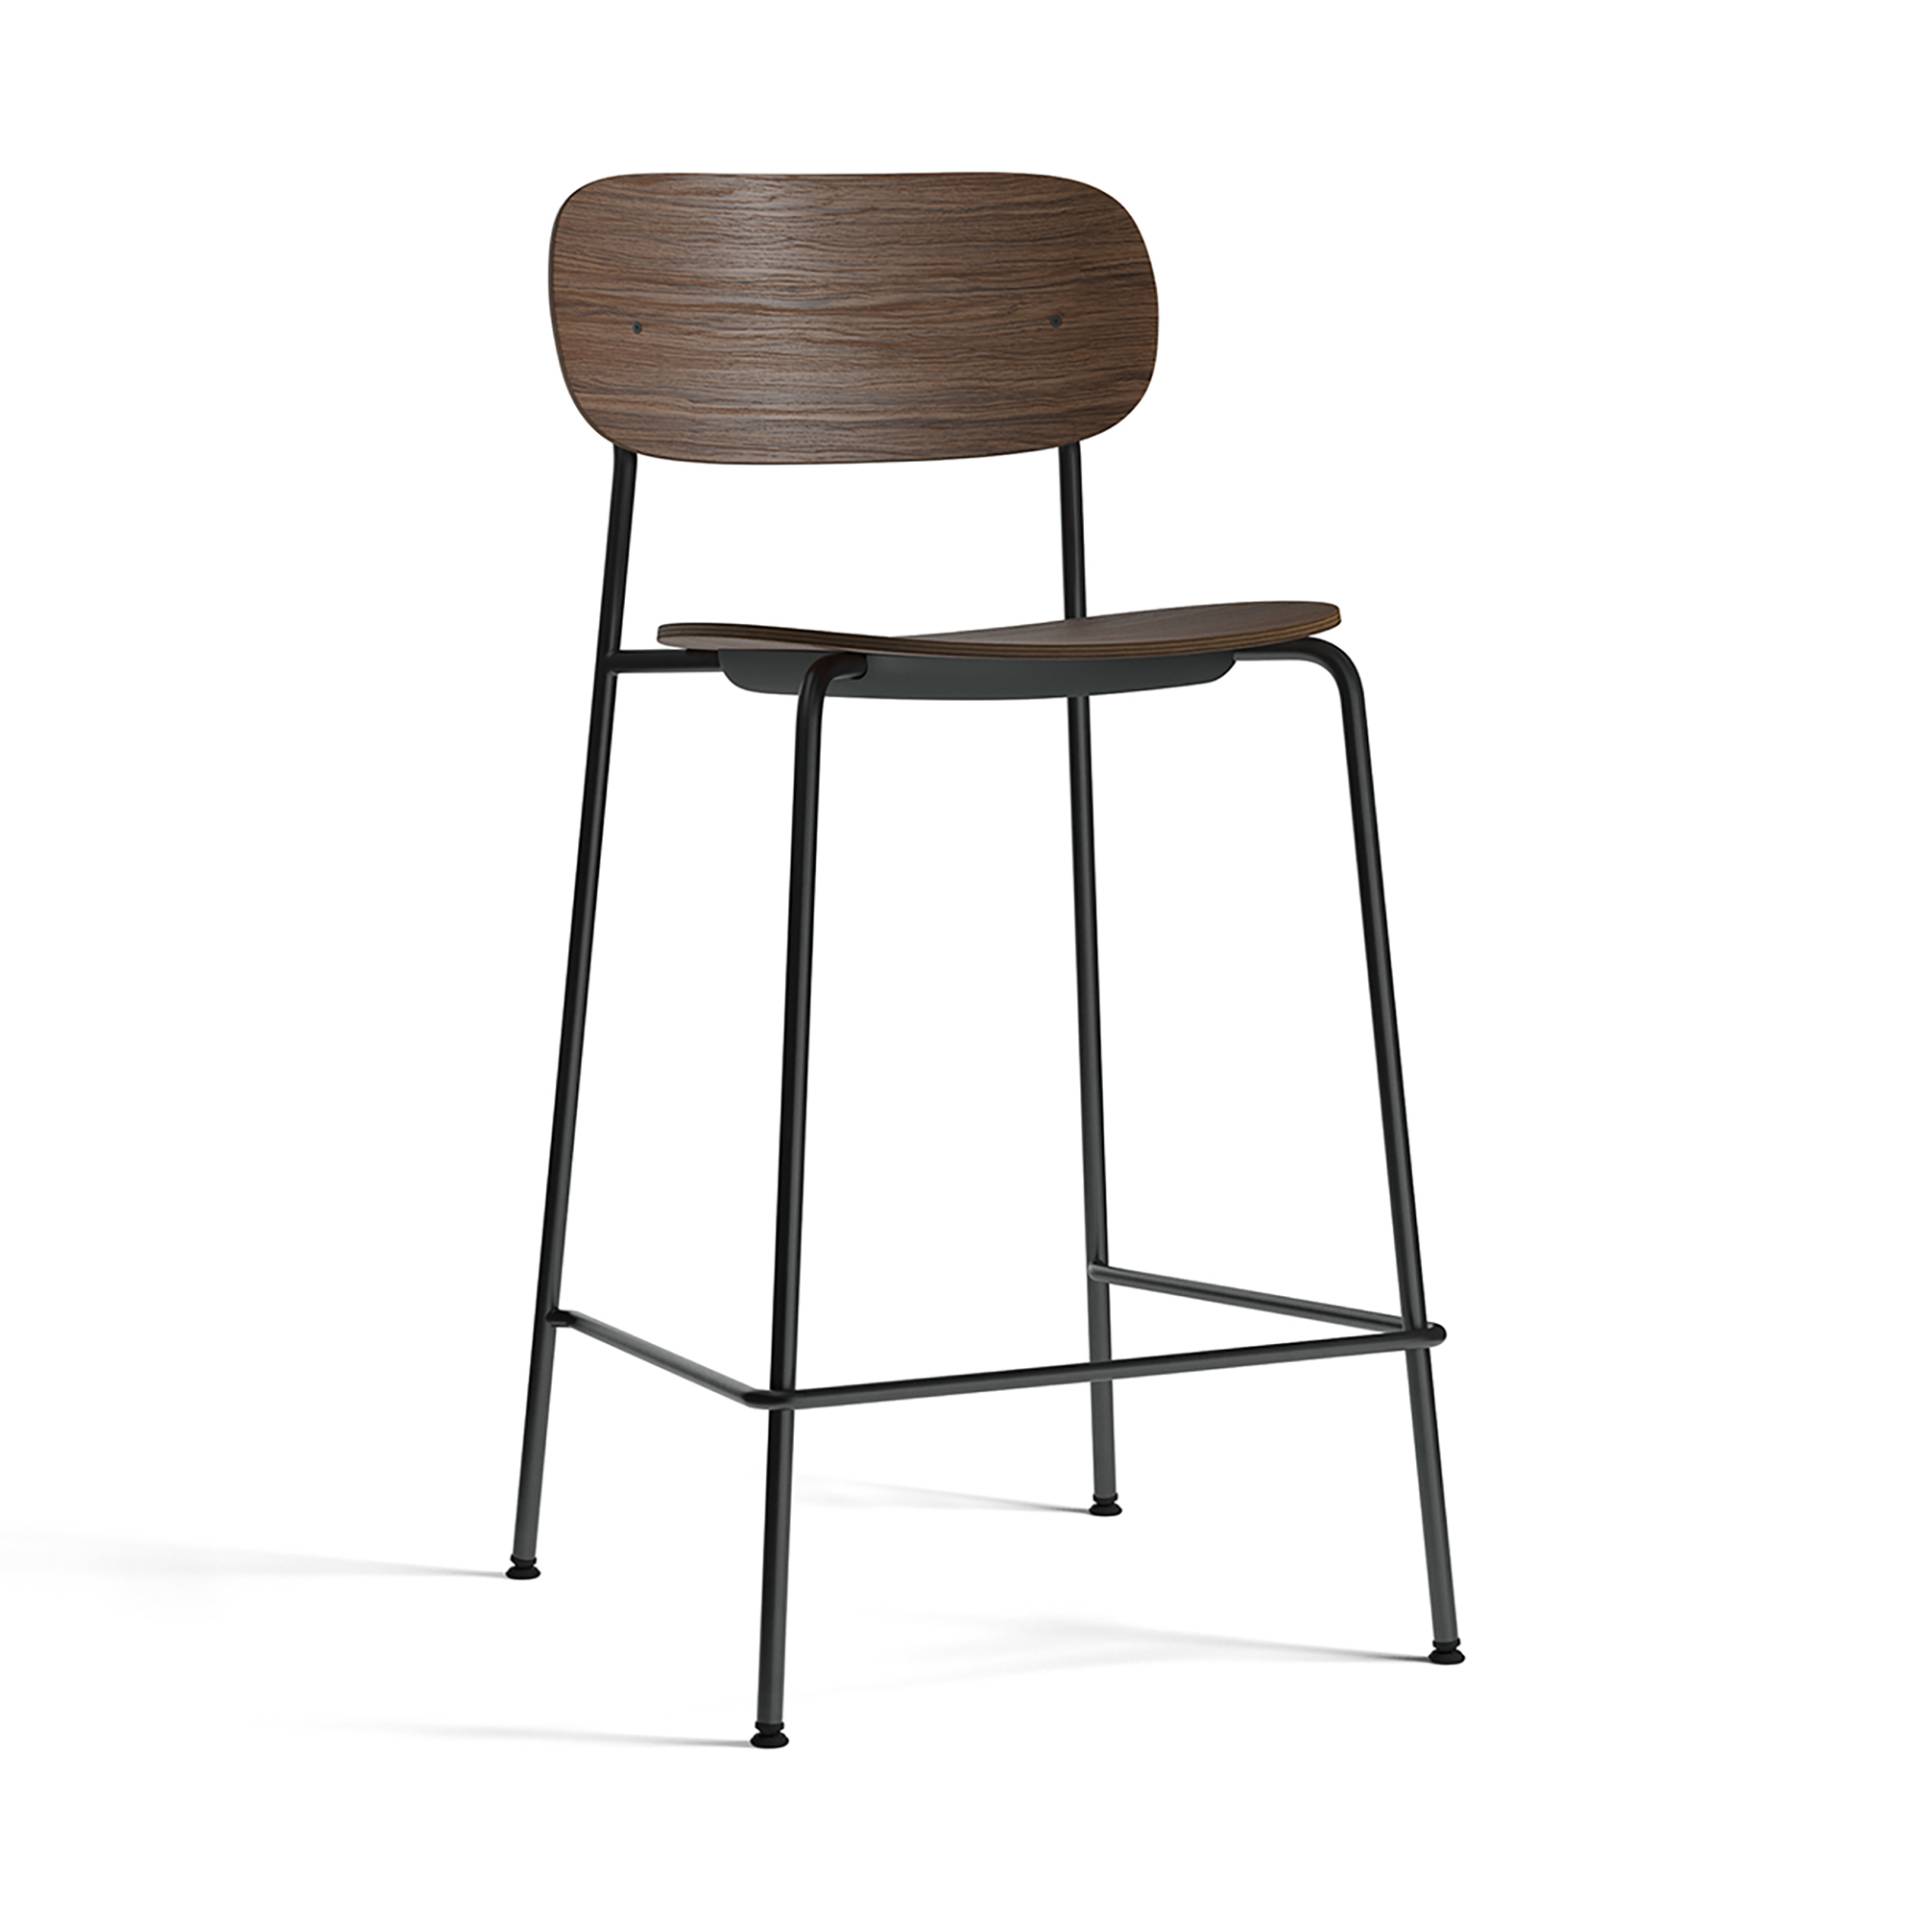 Audo - Co Counter Chair 65.5cm - eiche dunkel/gebeizt/BxHxT 49.4x94.5x48.2cm/Gestell Stahl schwarz pulverbeschichtet von Audo